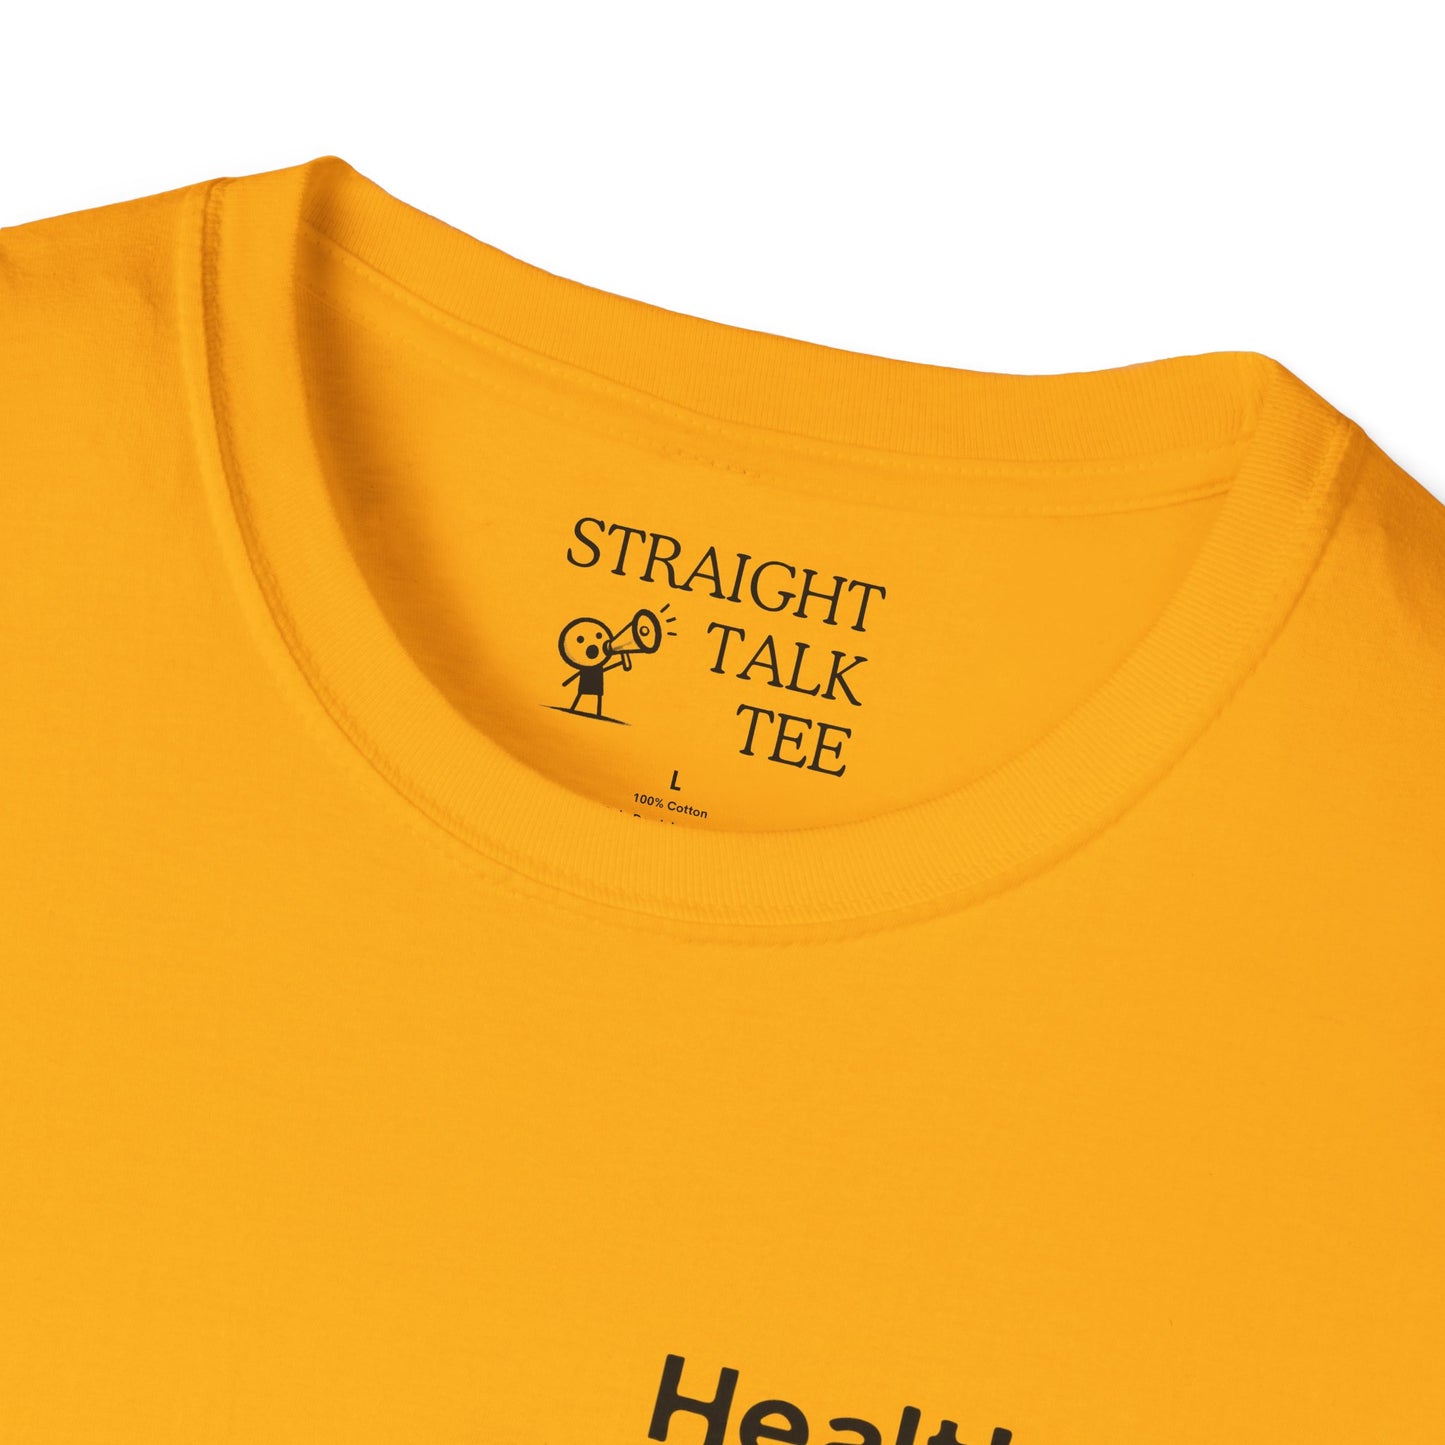 Healthcare Voter Soft-Syle t-shirt |unisex| Show you Care! Quiet Activism